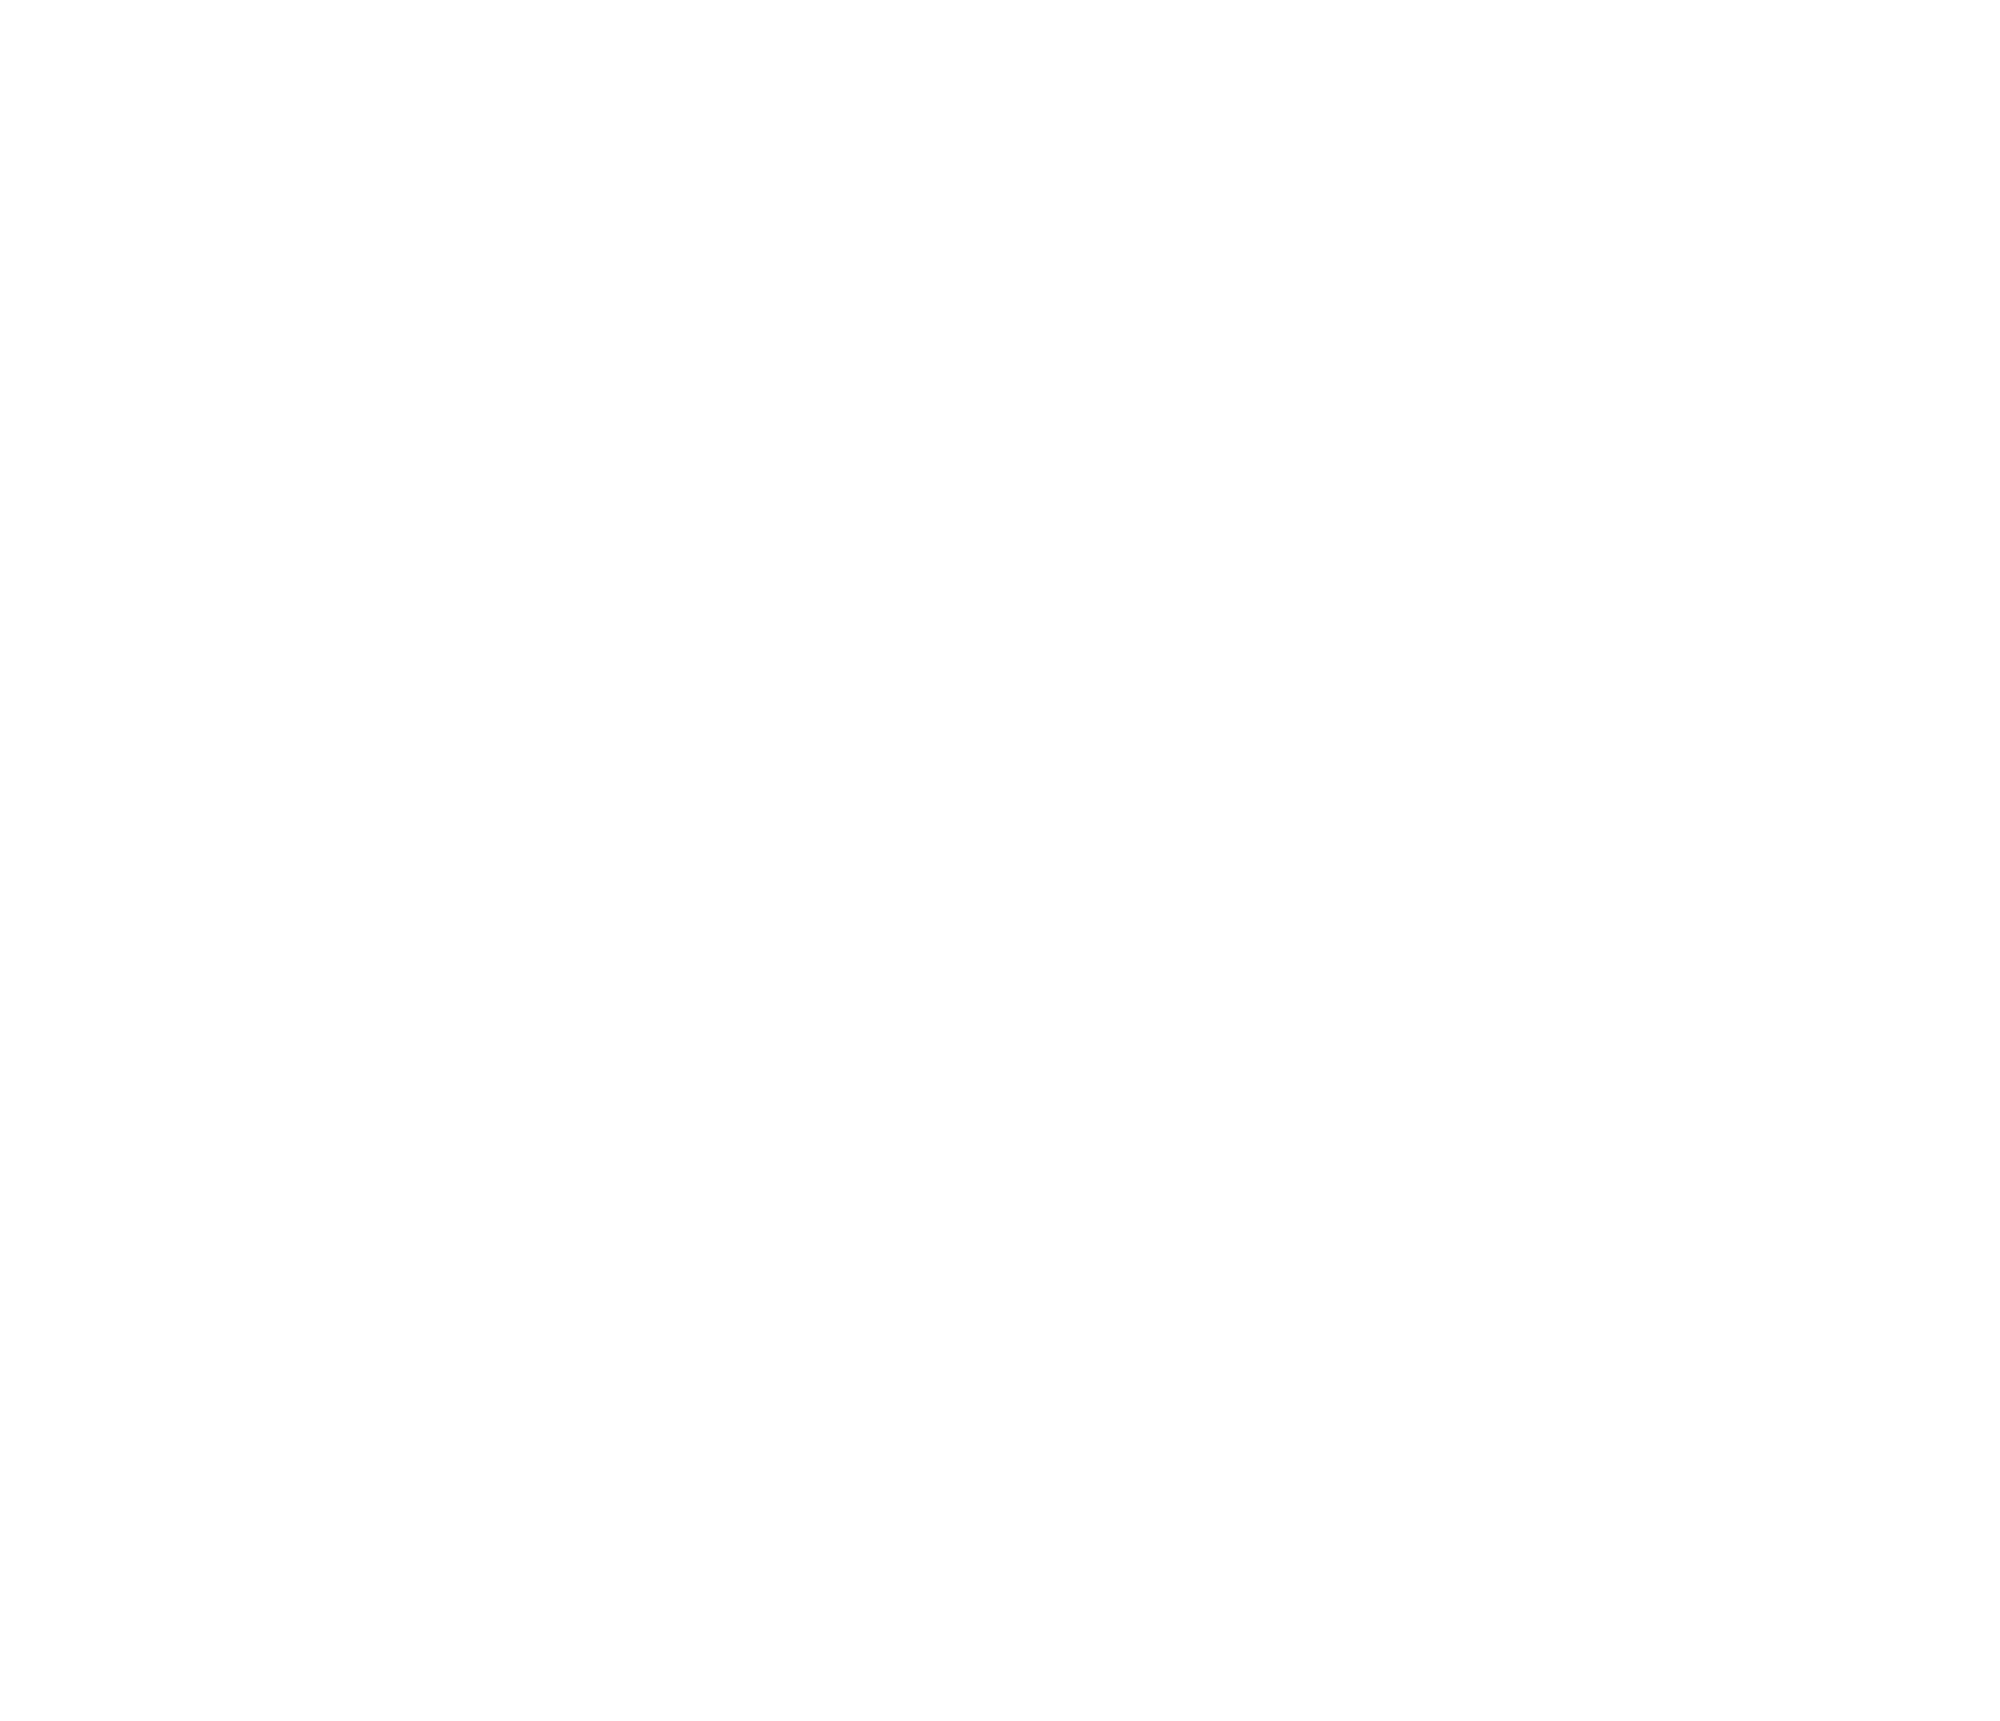 motokarova skola logo